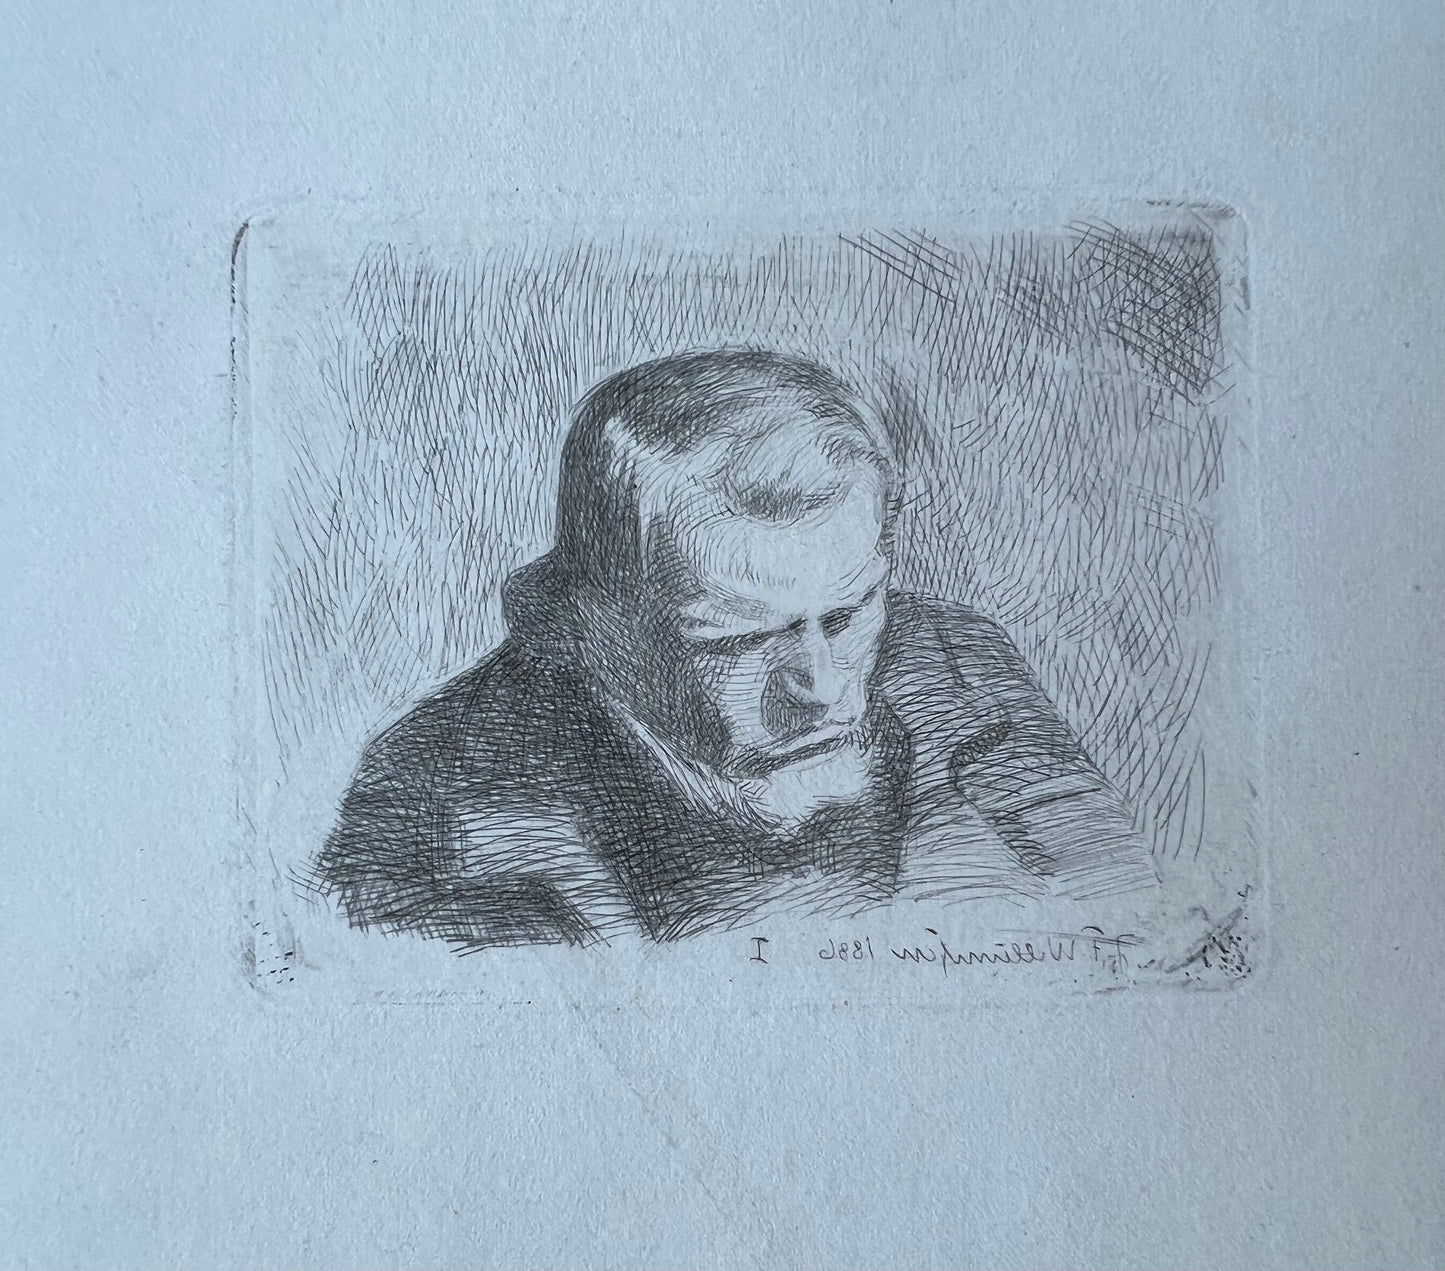 J. F. Willumsen. “Studiehoved”, 1886